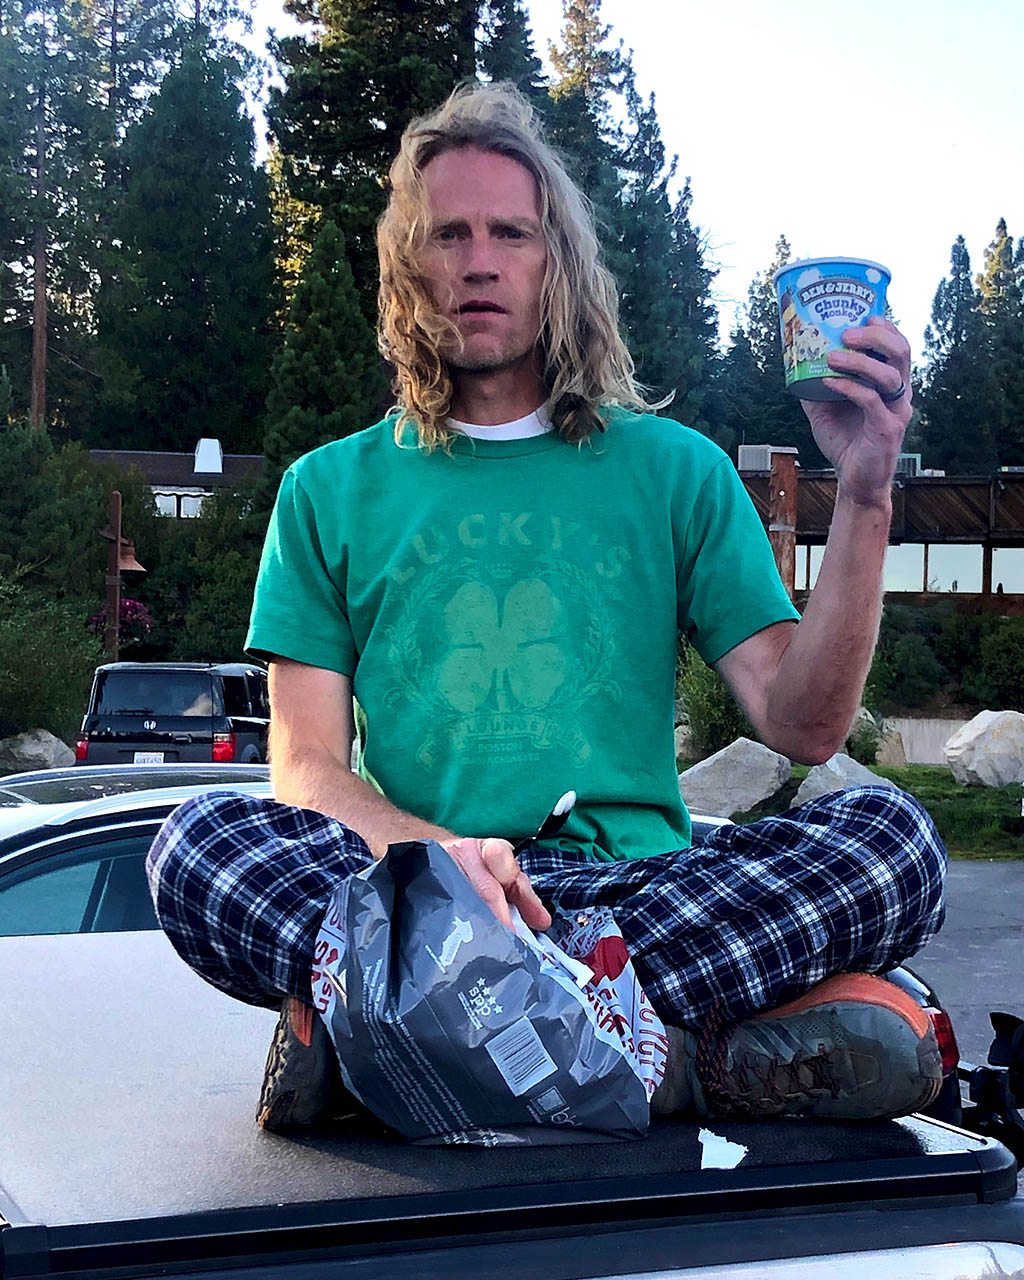 Matt Van Horn sitting on truck holding Ben and Jerry's Chunky Monkey ice cream.